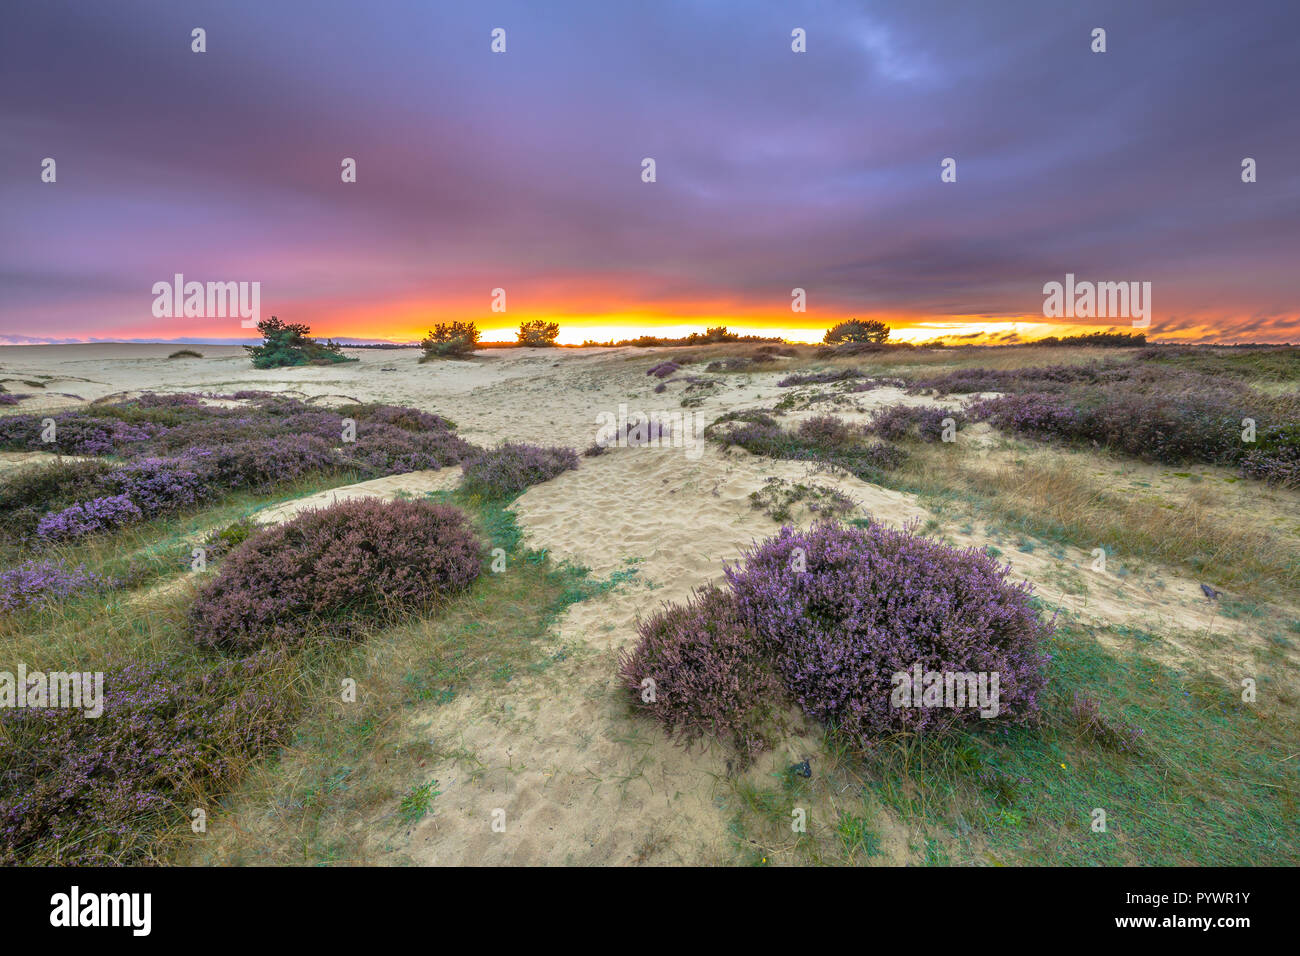 Dünen, Gras- und Heidelandschaft (Calluna vulgaris) unter dem atemberaubenden Sonnenuntergang in einem Naturschutzgebiet in Holland, Europa Stockfoto